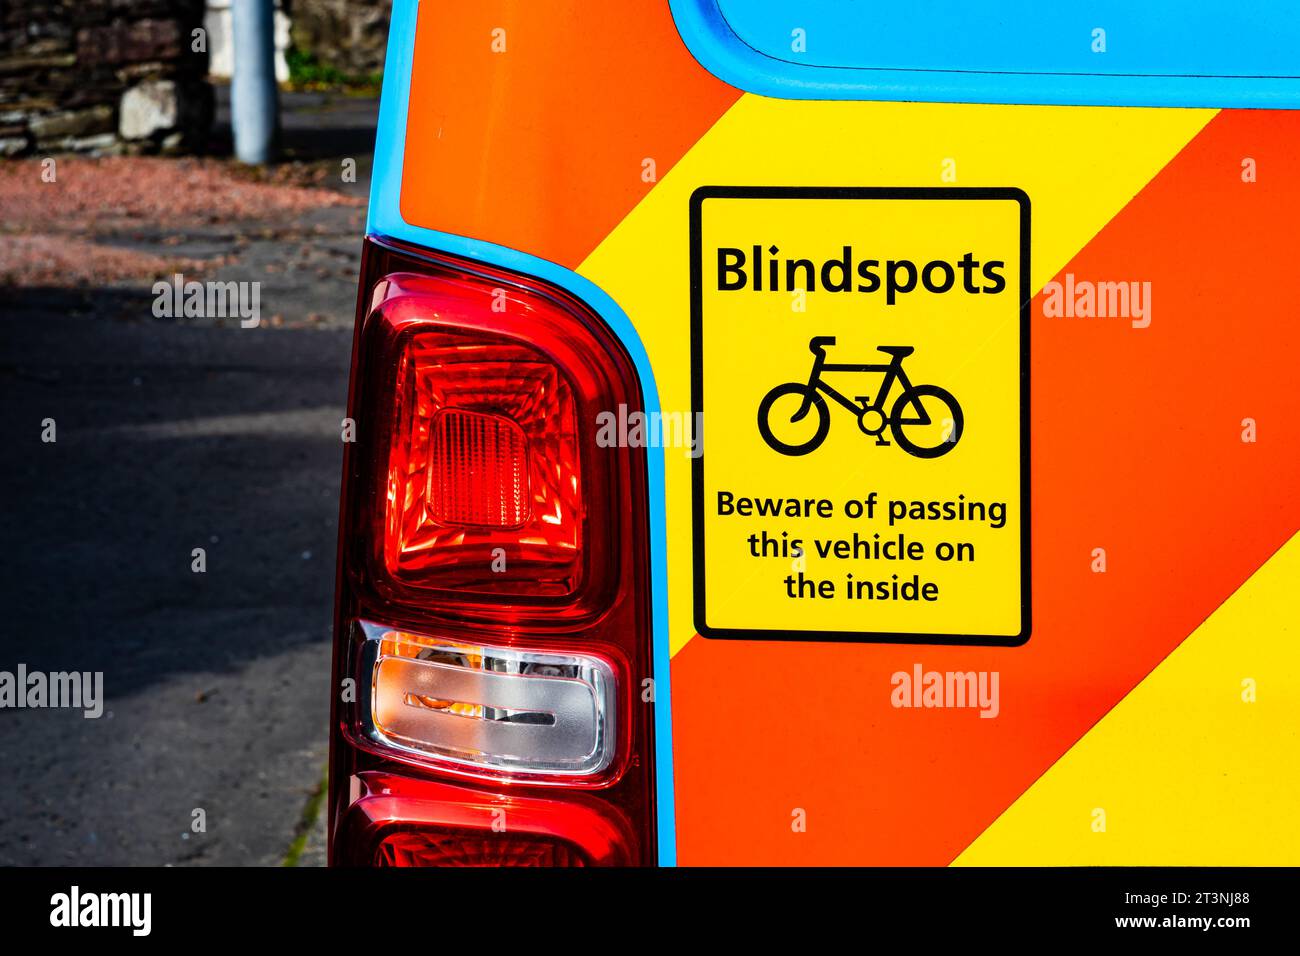 Furgone blu con contrassegni di avvertenza rossi e gialli con un adesivo di segnalazione dei punti ciechi dei ciclisti sul lato sinistro vicino al faro posteriore Foto Stock